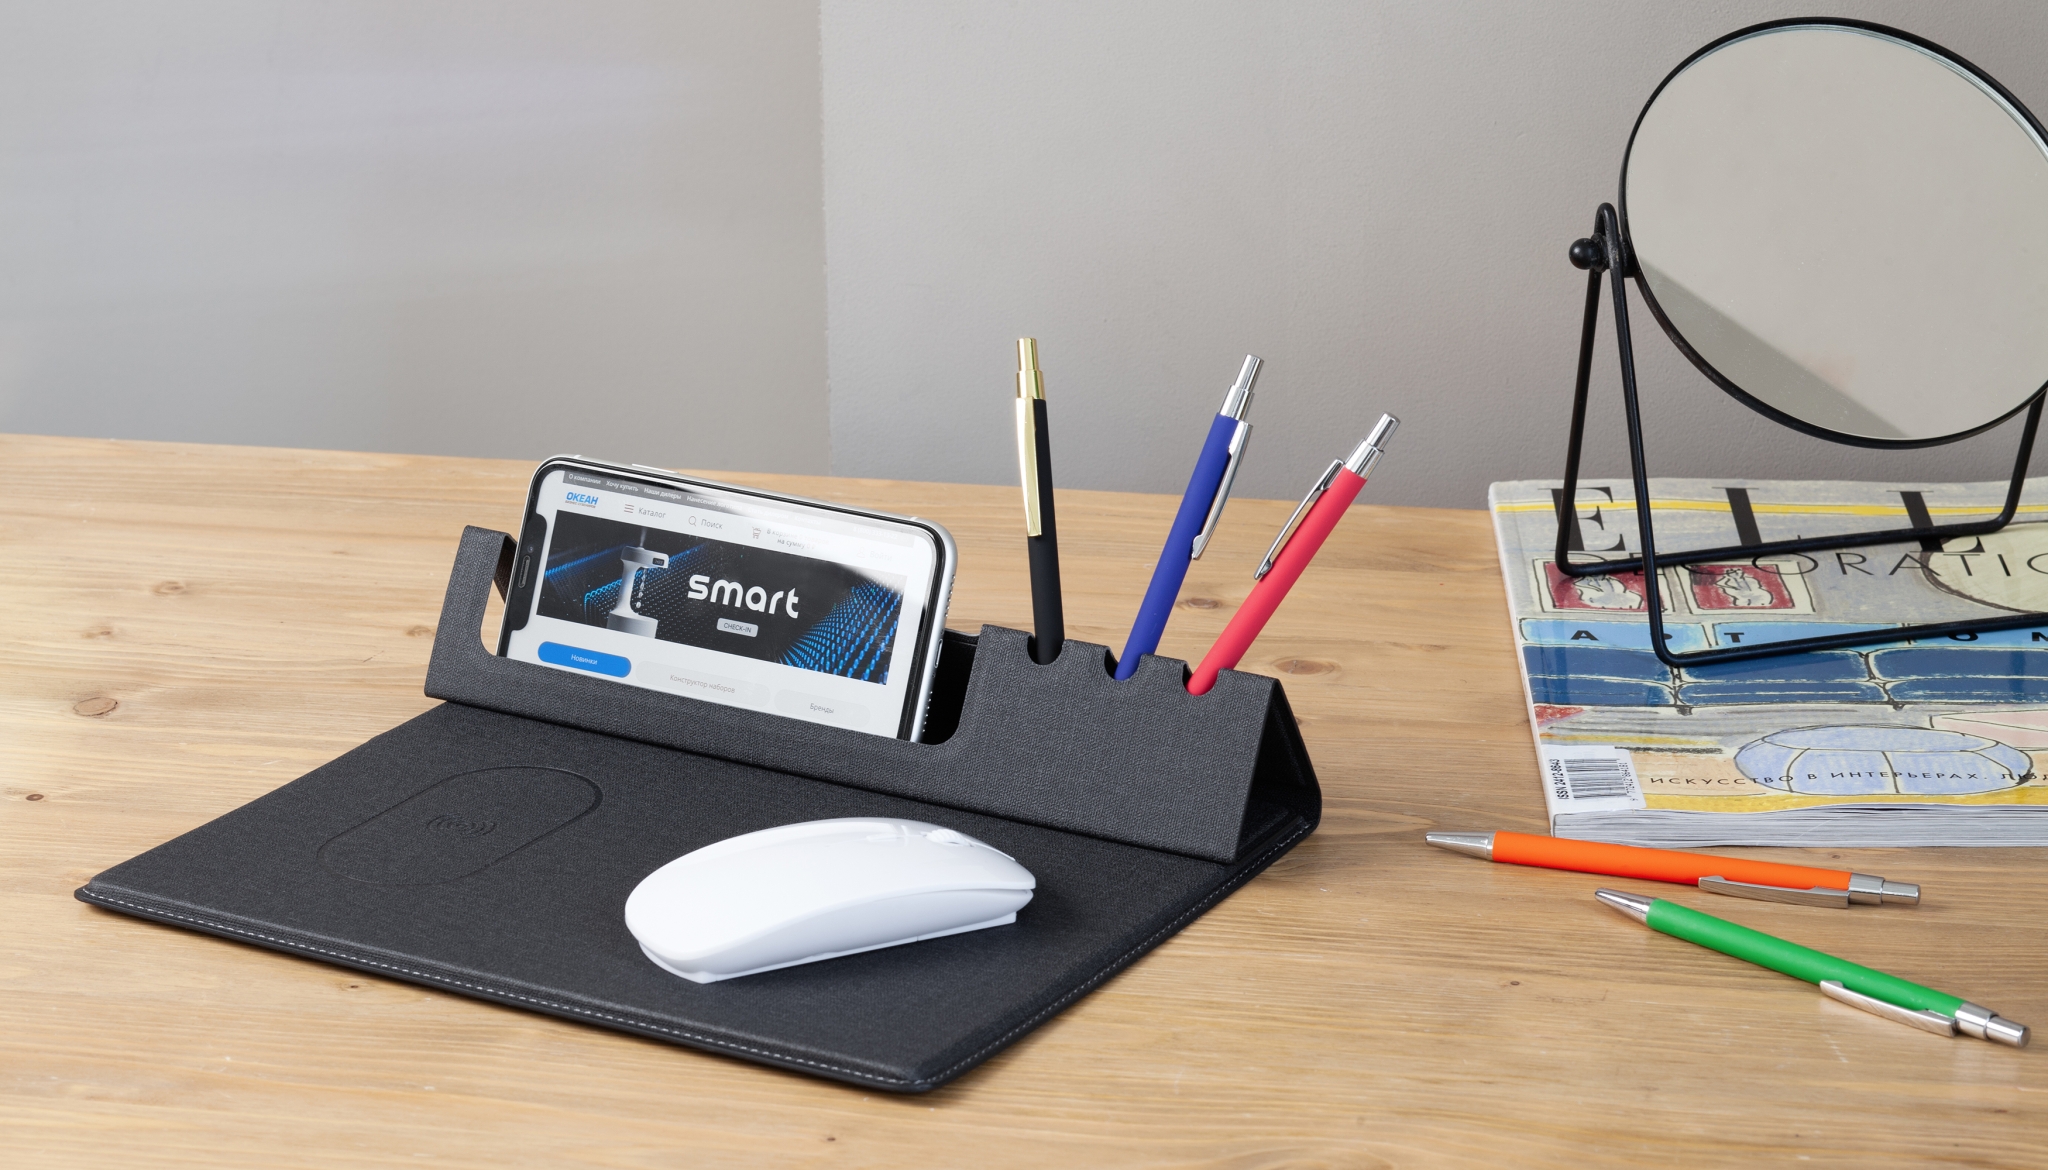 Настольная складная подставка "Cool Desk" с беспроводным (10W) зарядным устройством и ковриком для мыши, серый, pvc